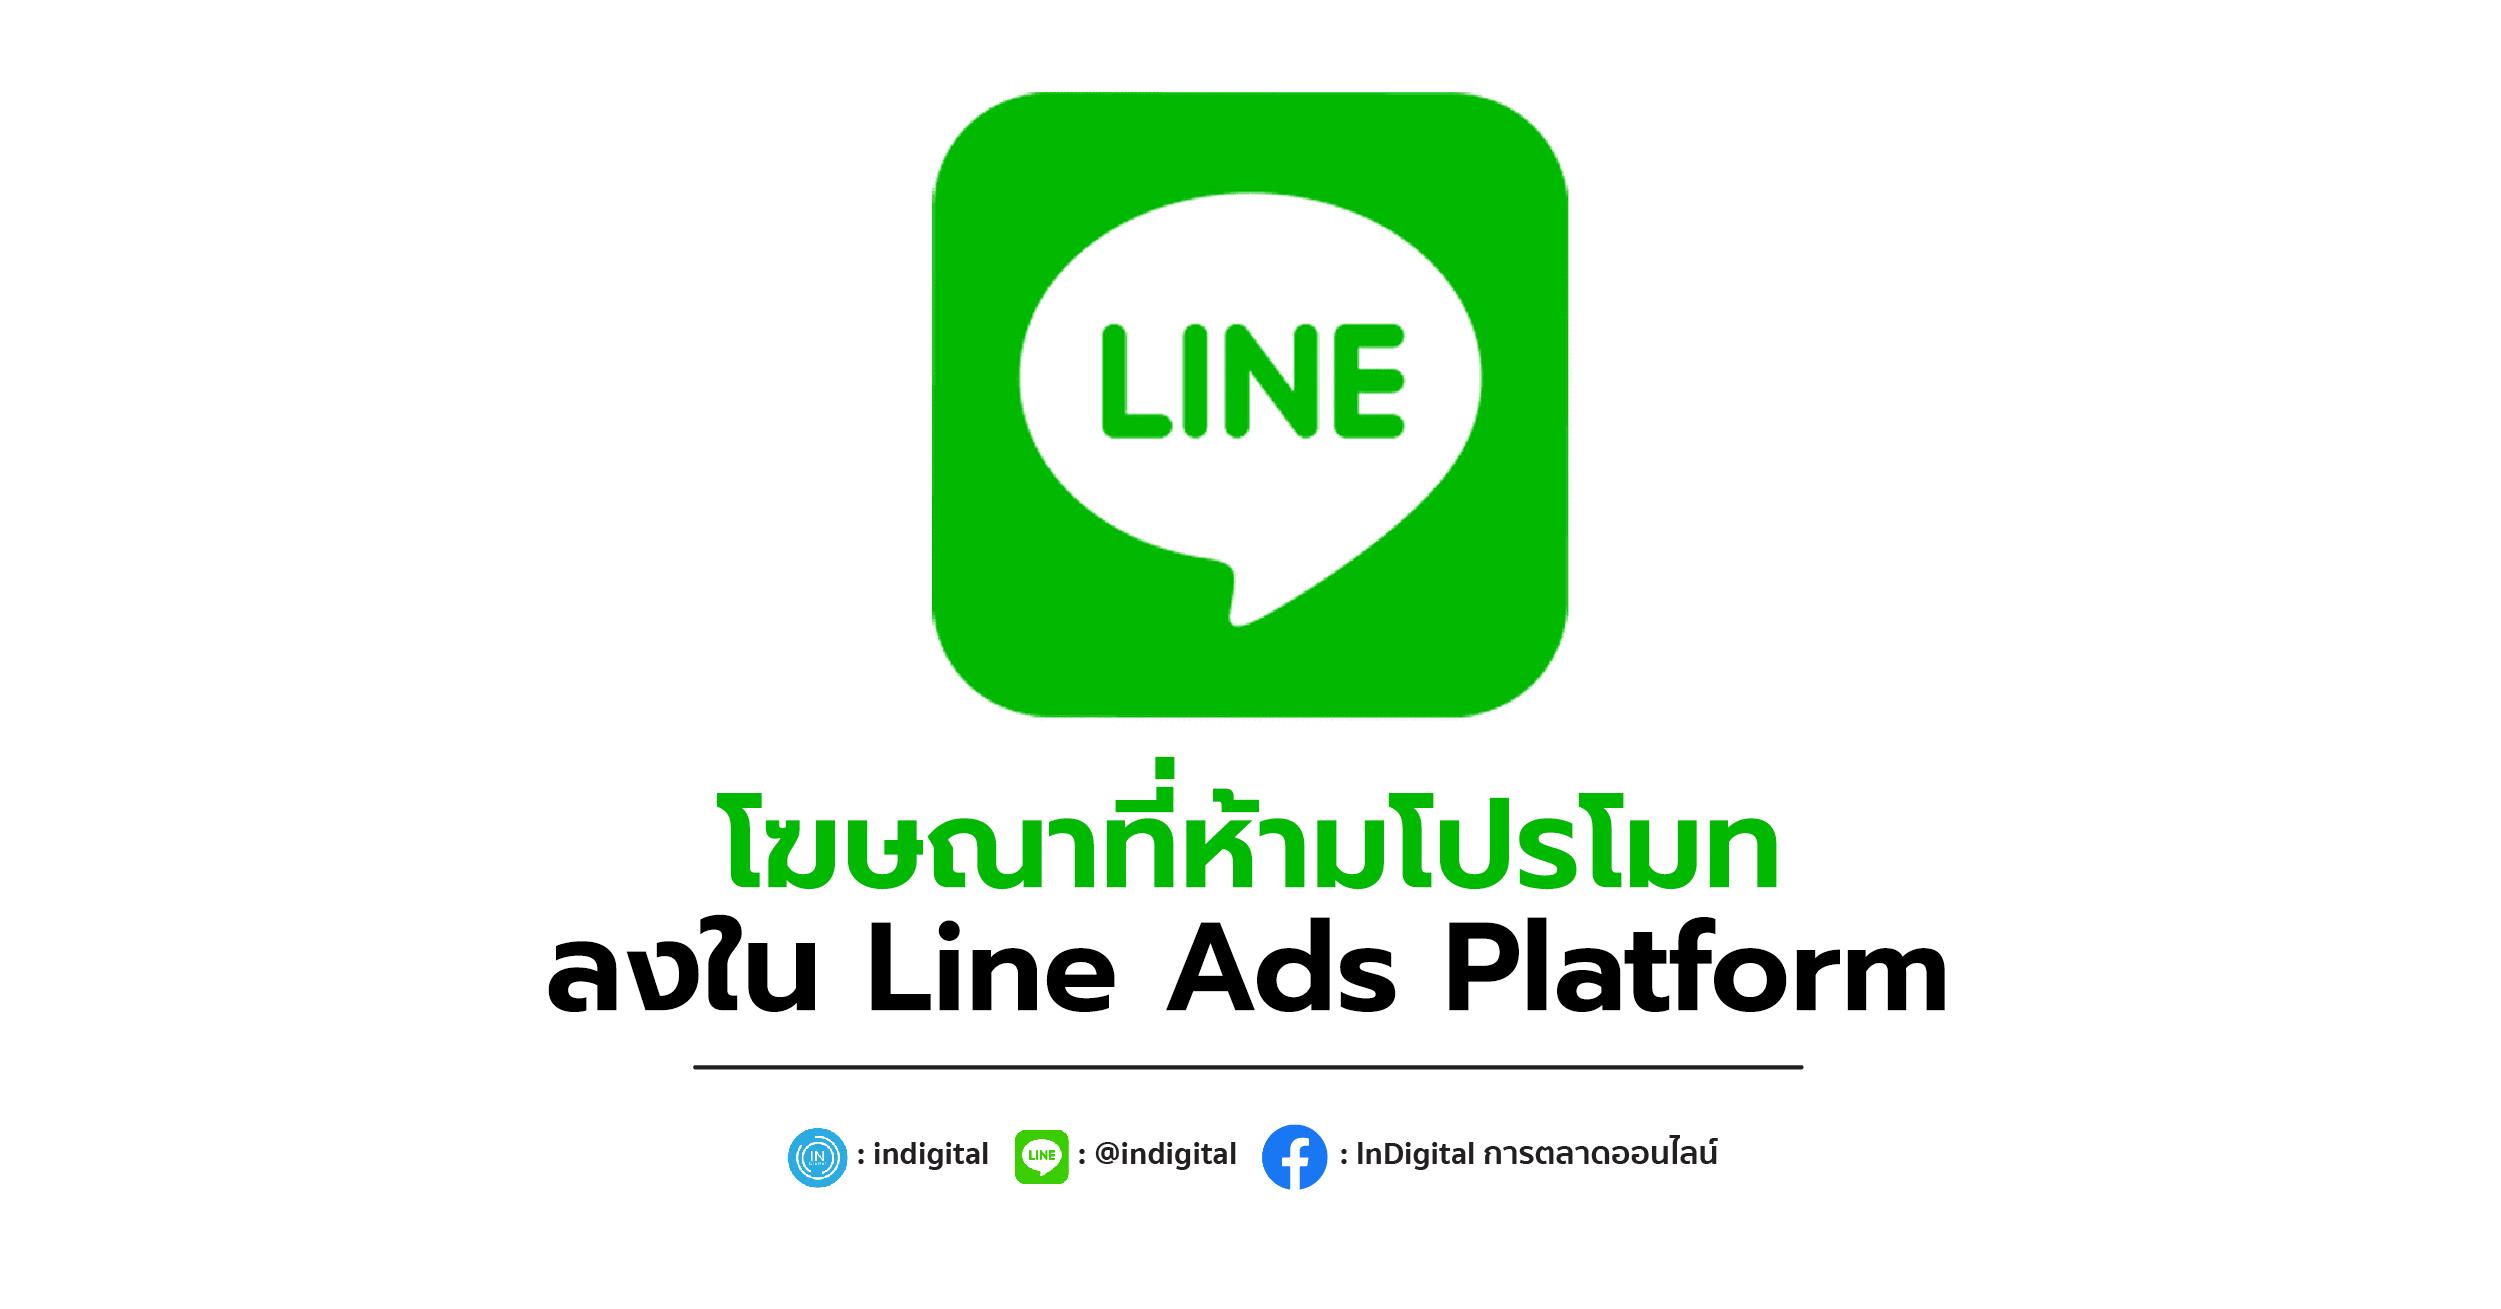 โฆษณาที่ห้ามโปรโมทลงใน Line Ads Platform